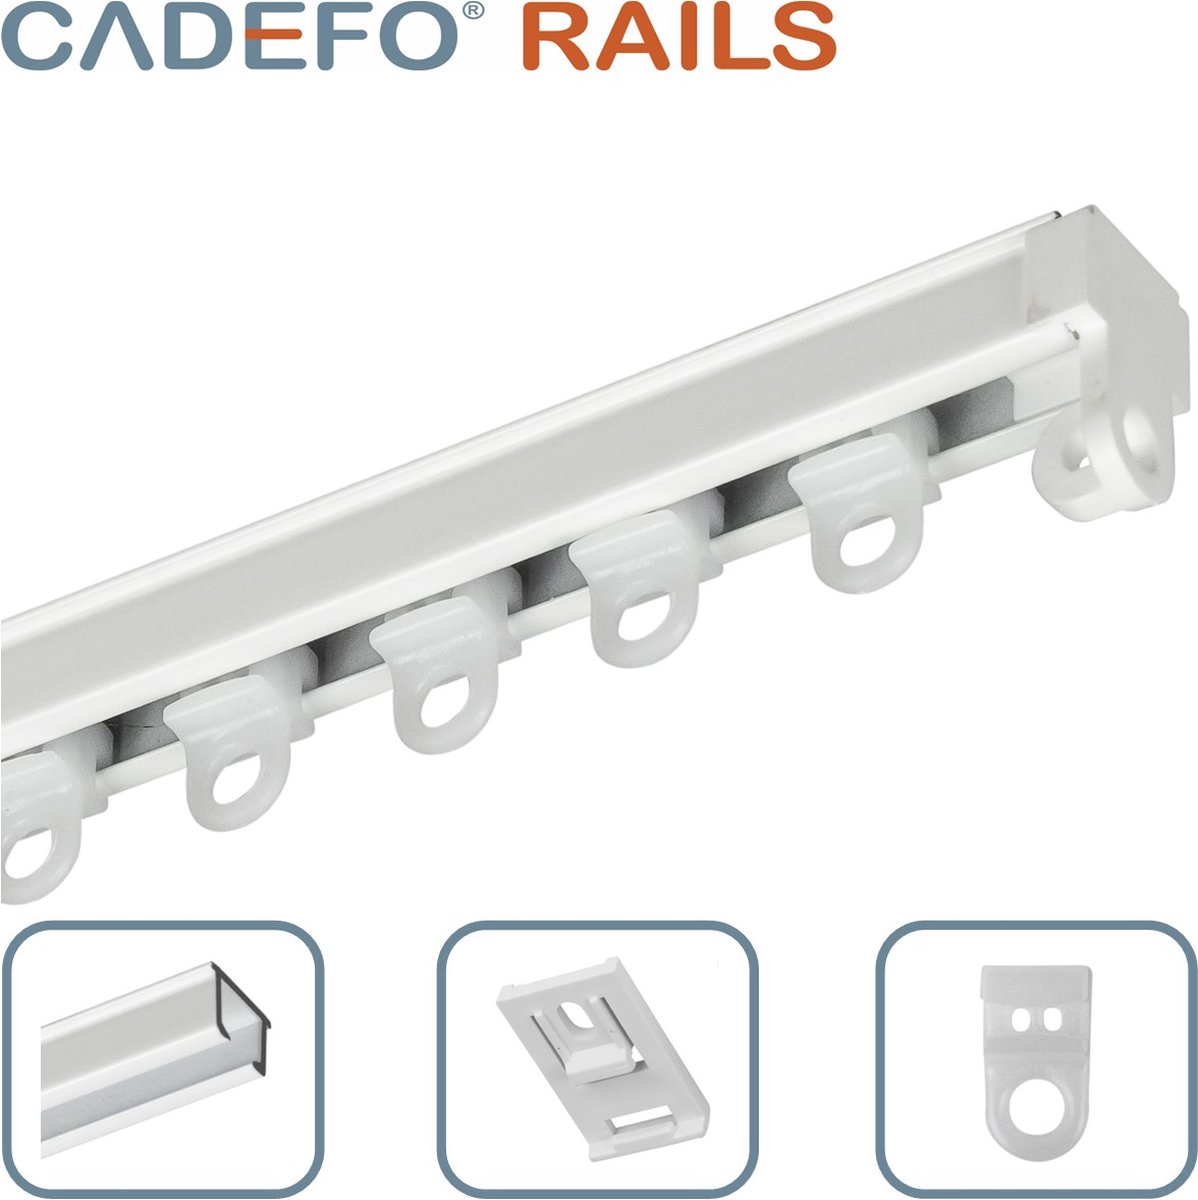 CADEFO RAILS (301 - 350 cm) Gordijnrails - Compleet op maat! - UIT 1 STUK - Leverbaar tot 6 meter - Plafondbevestiging - Lengte 349 cm